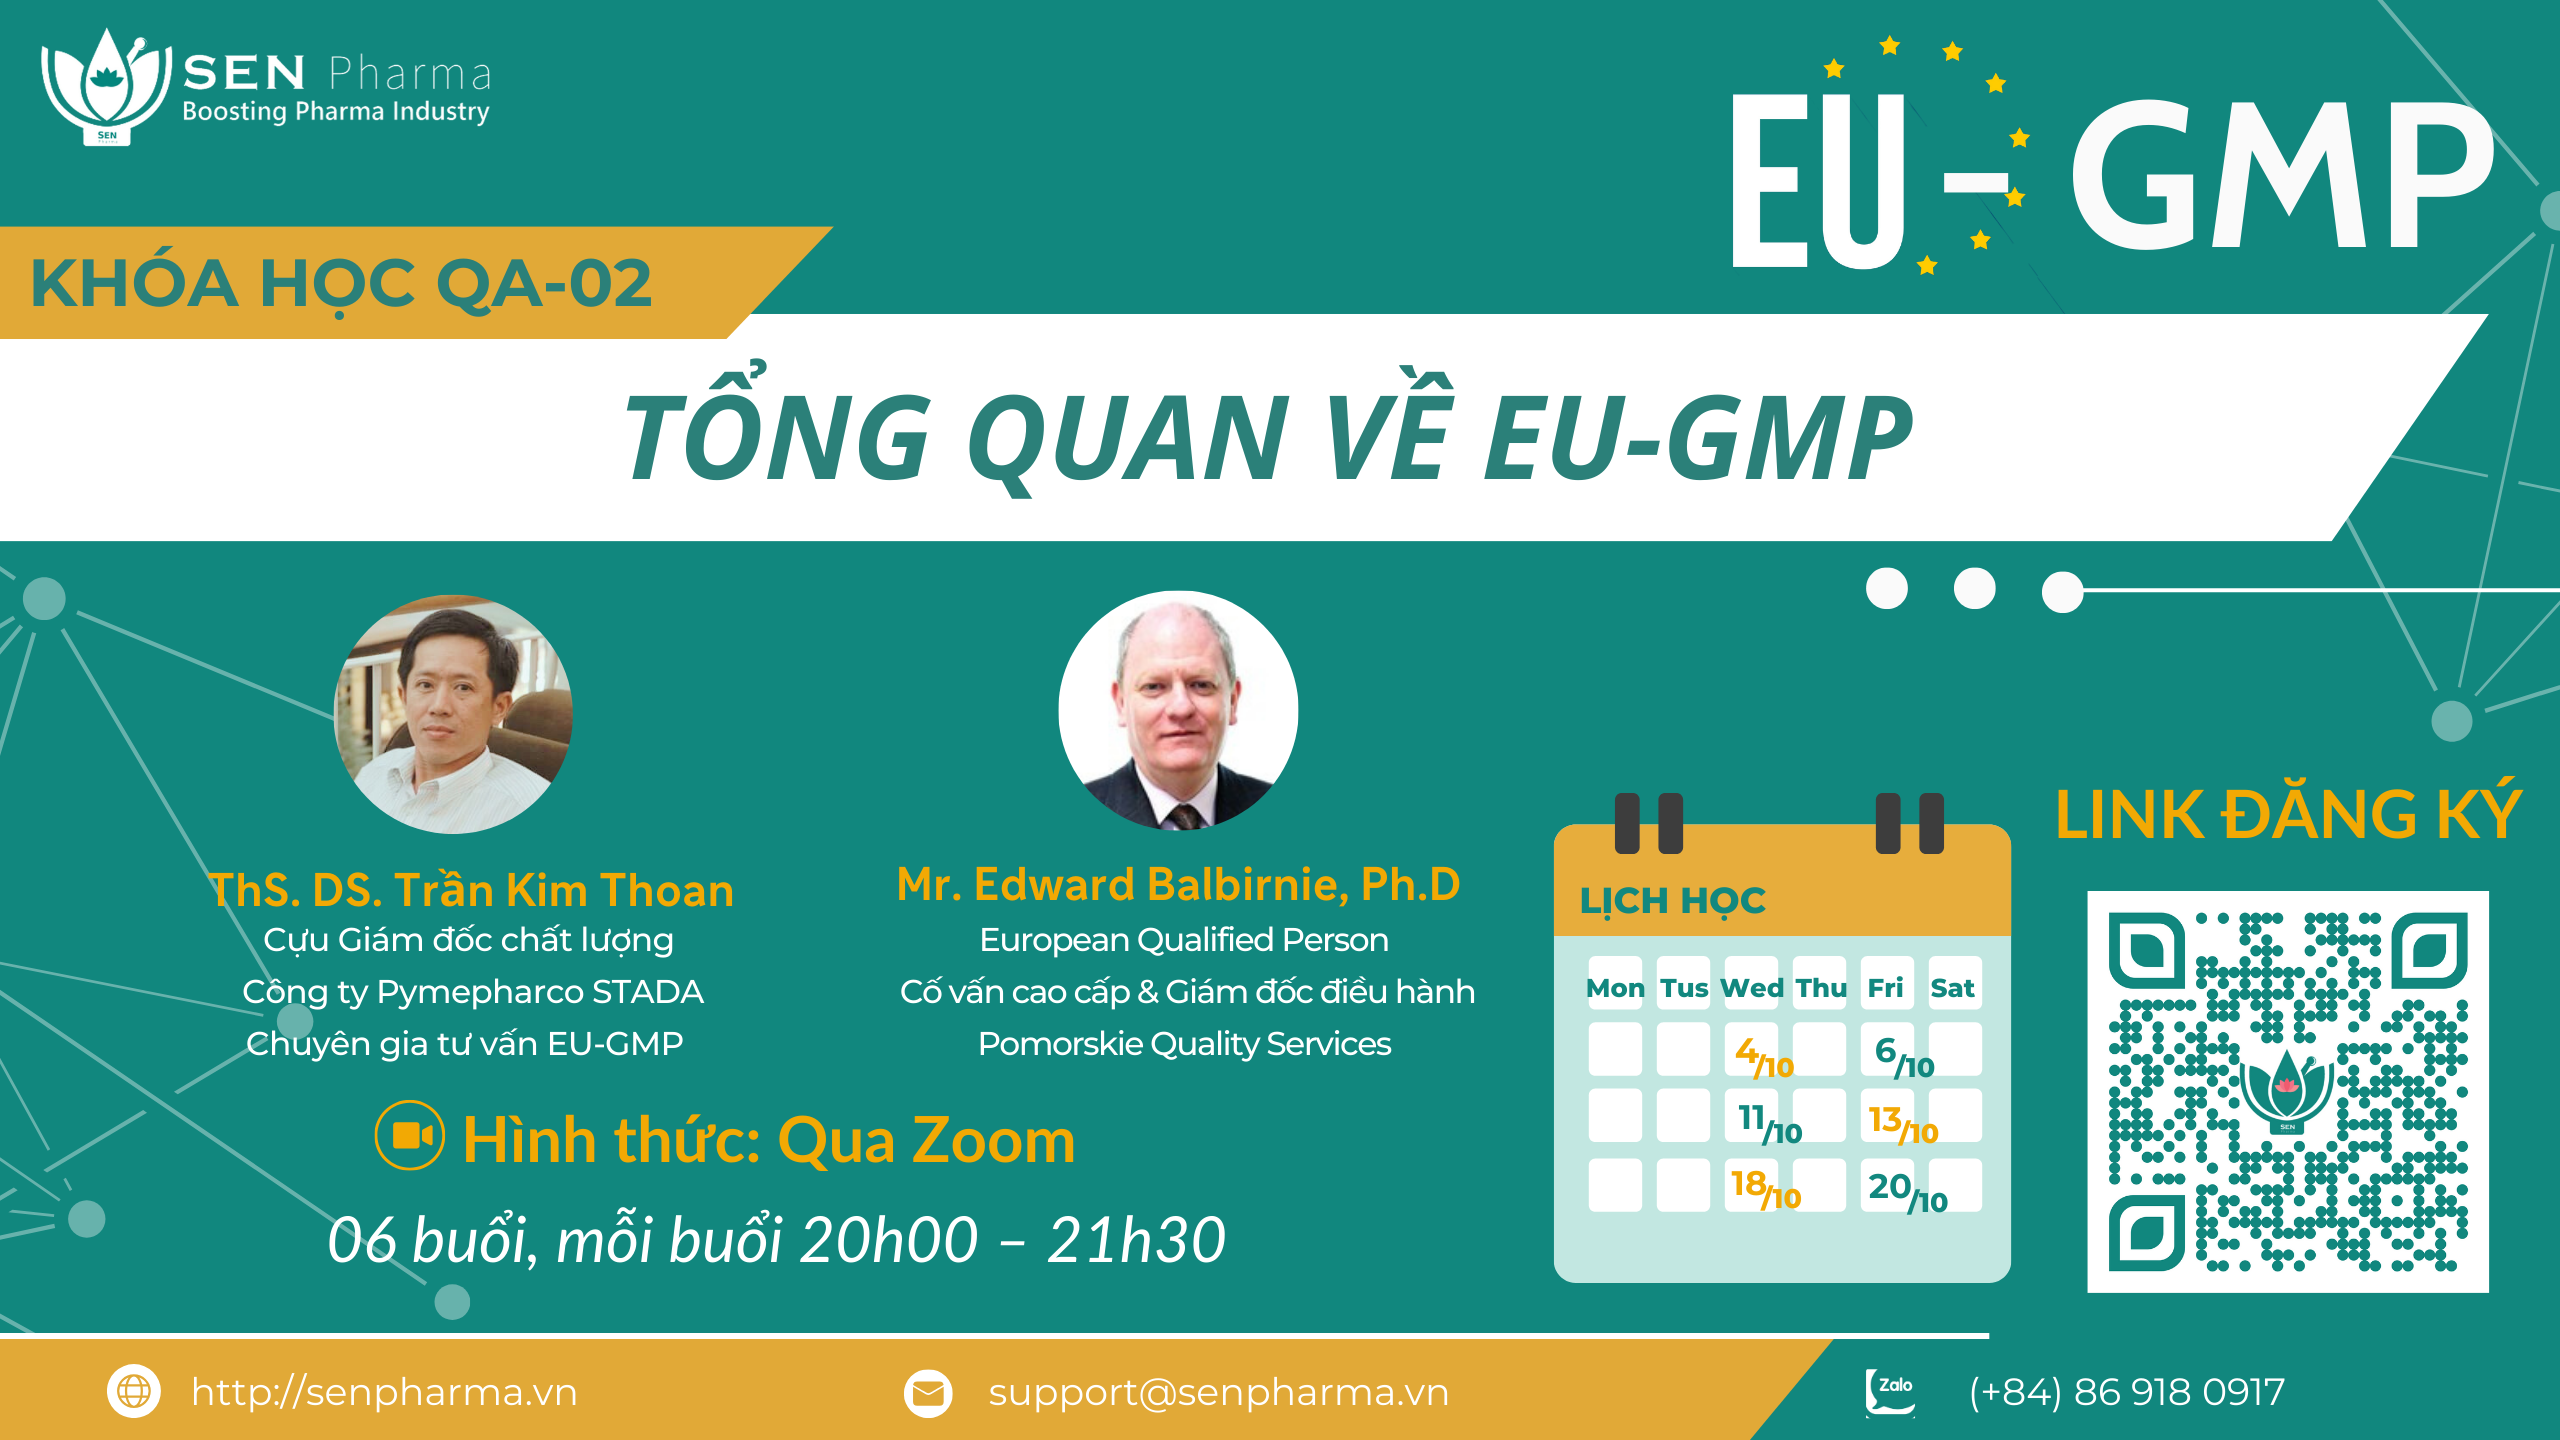 Khóa học QA-02: Tổng quan về EU-GMP – Profile giảng viên